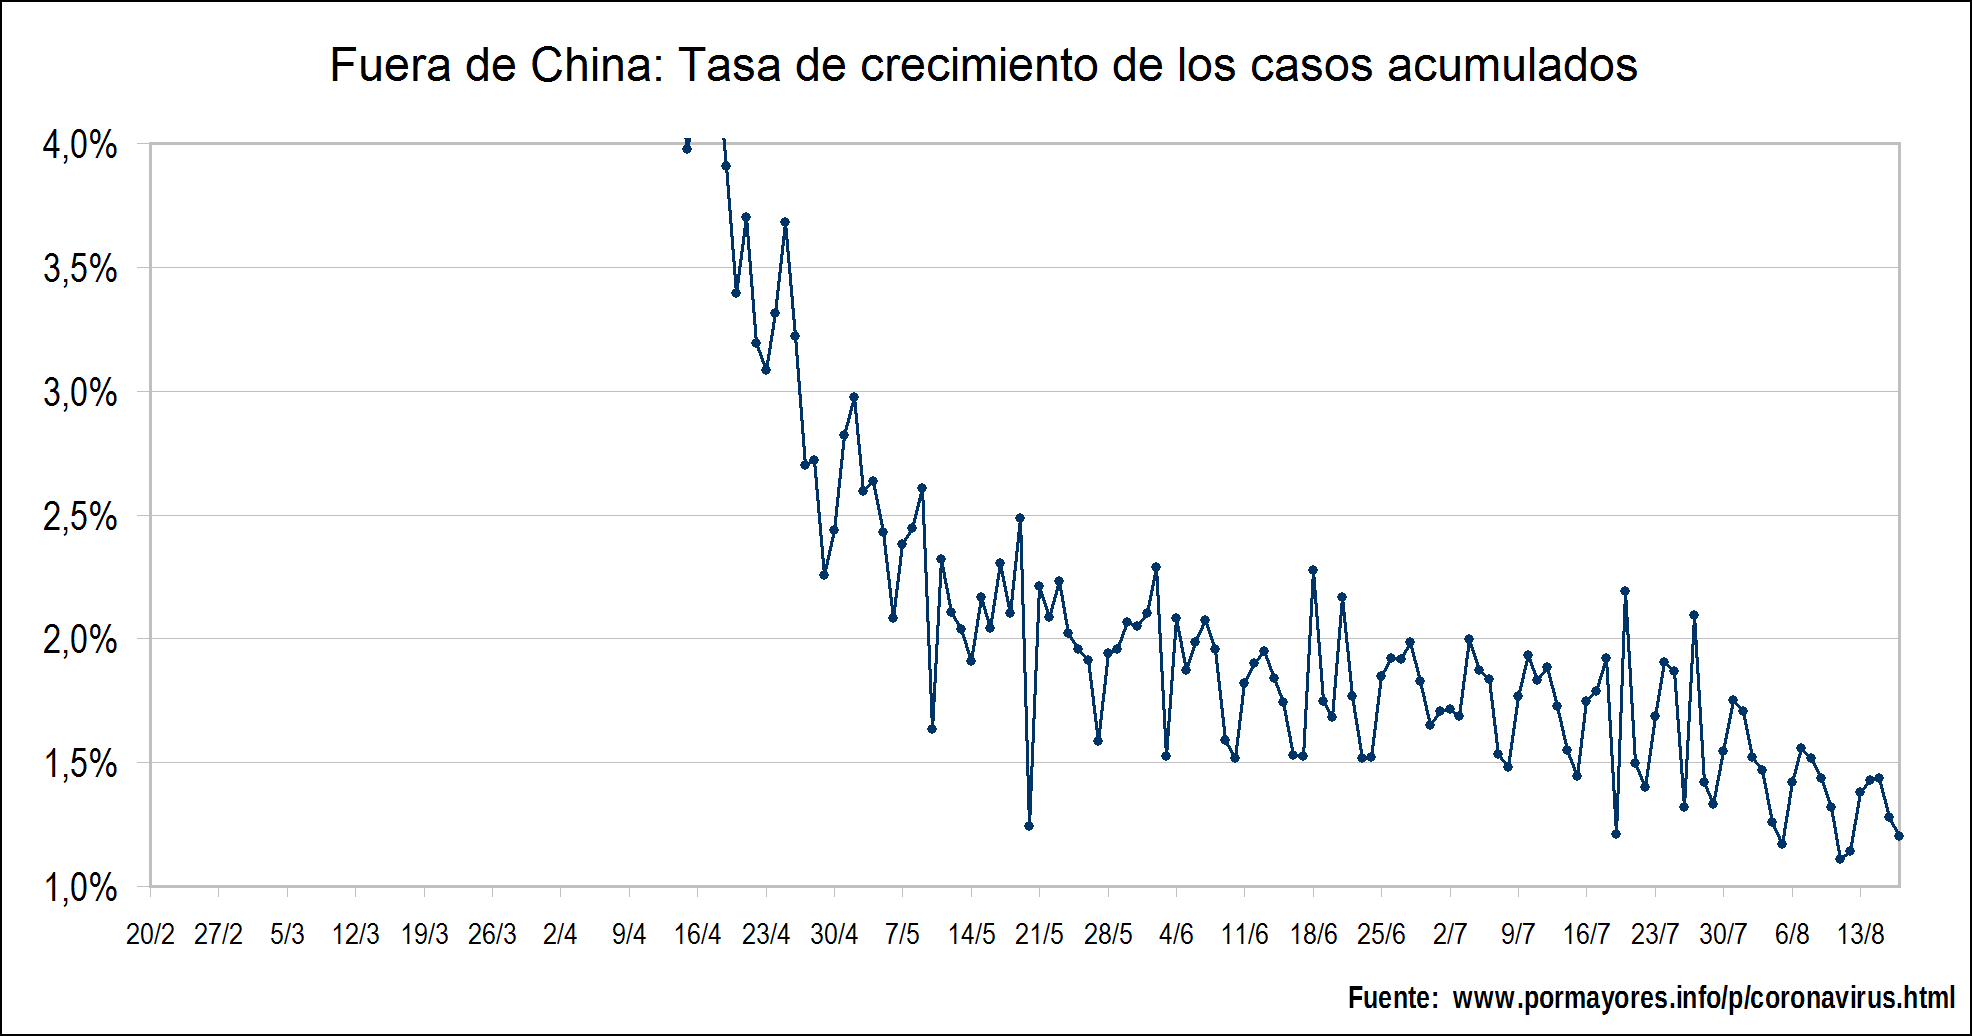 Curva con la tasa de crecimiento de la cantidad de casos acumulados fuera de China que en la última semana oscila alrededor del 17%